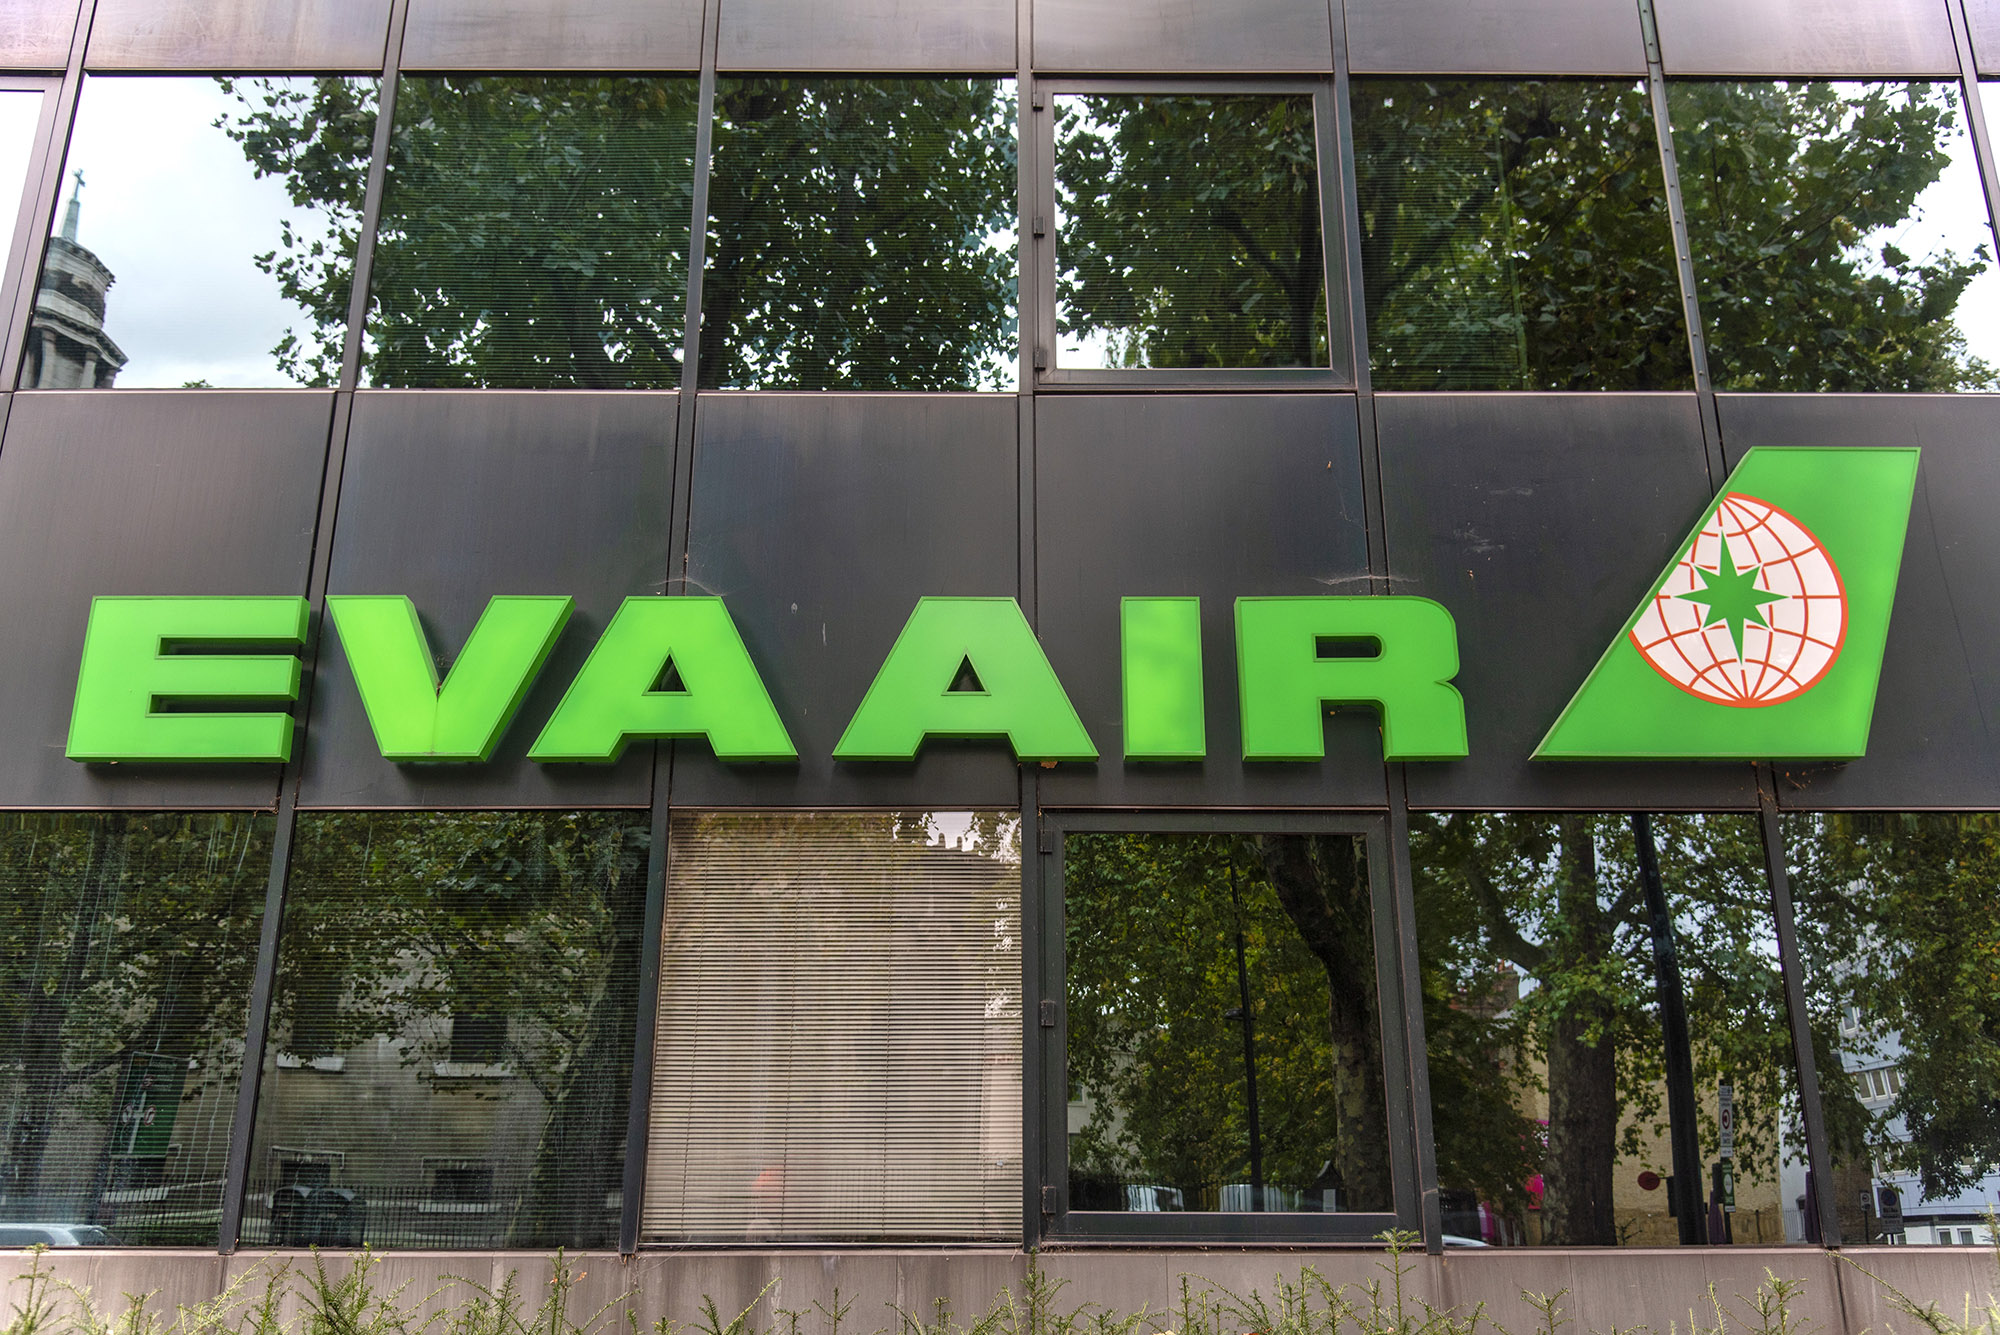 An EVA Air logo seen at Evergreen House in London.